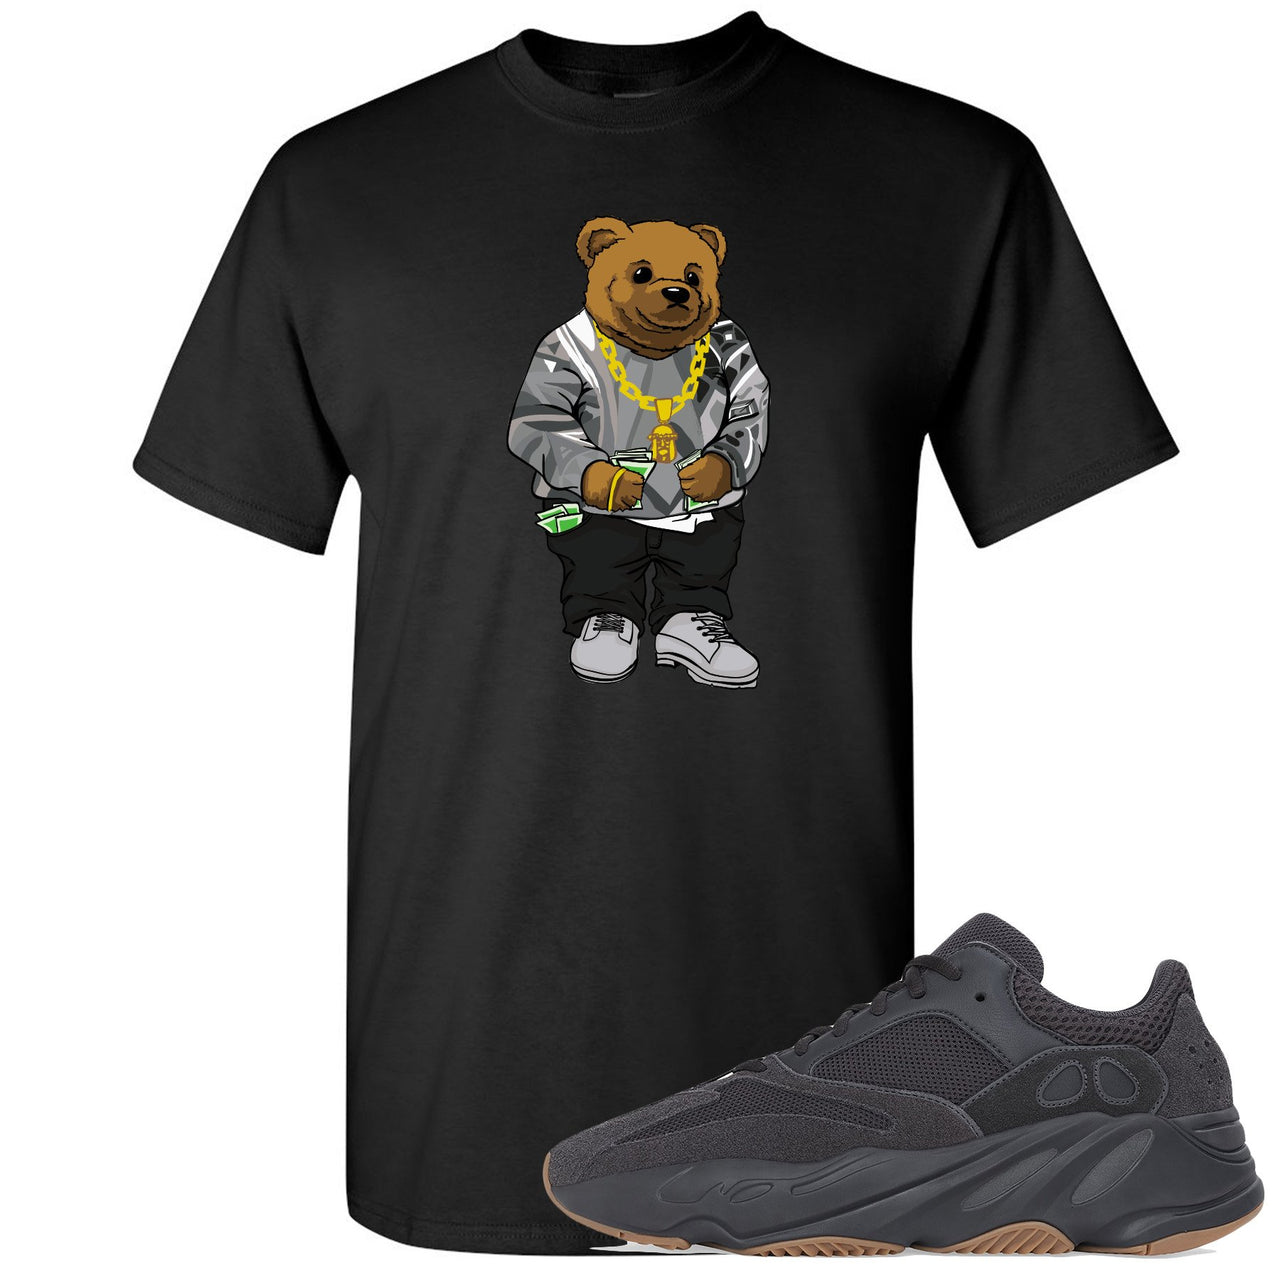 Yeezy Boost 700 Utility Black Sneaker Hook Up Sweater Bear Black T-Shirt